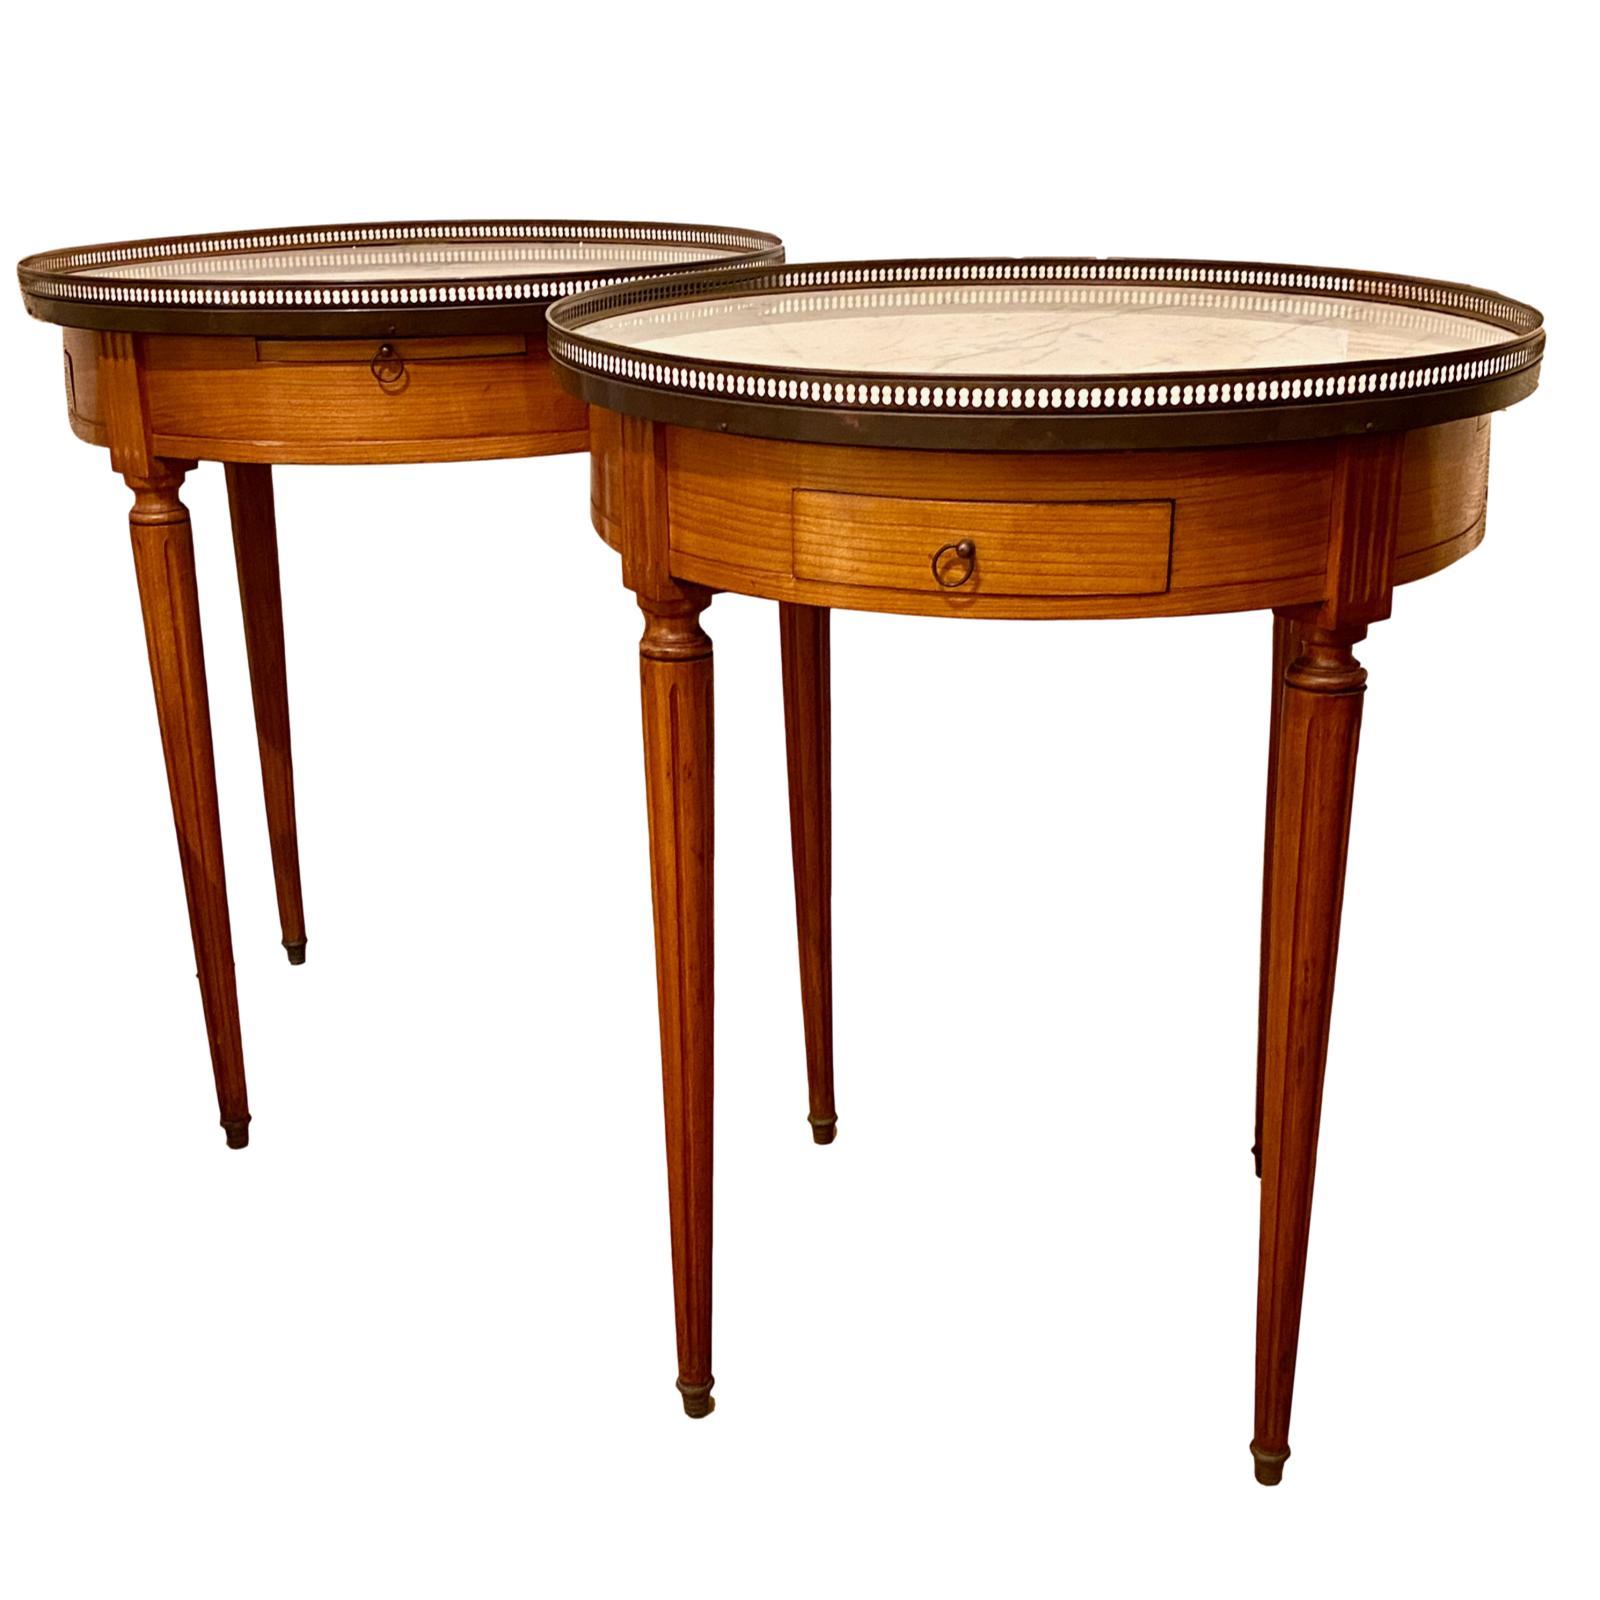 Paire de tables de guéridon en bois, datant des années 1930, avec un plateau en marbre et une rampe en laiton autour du plateau.

Mesures
Hauteur 29